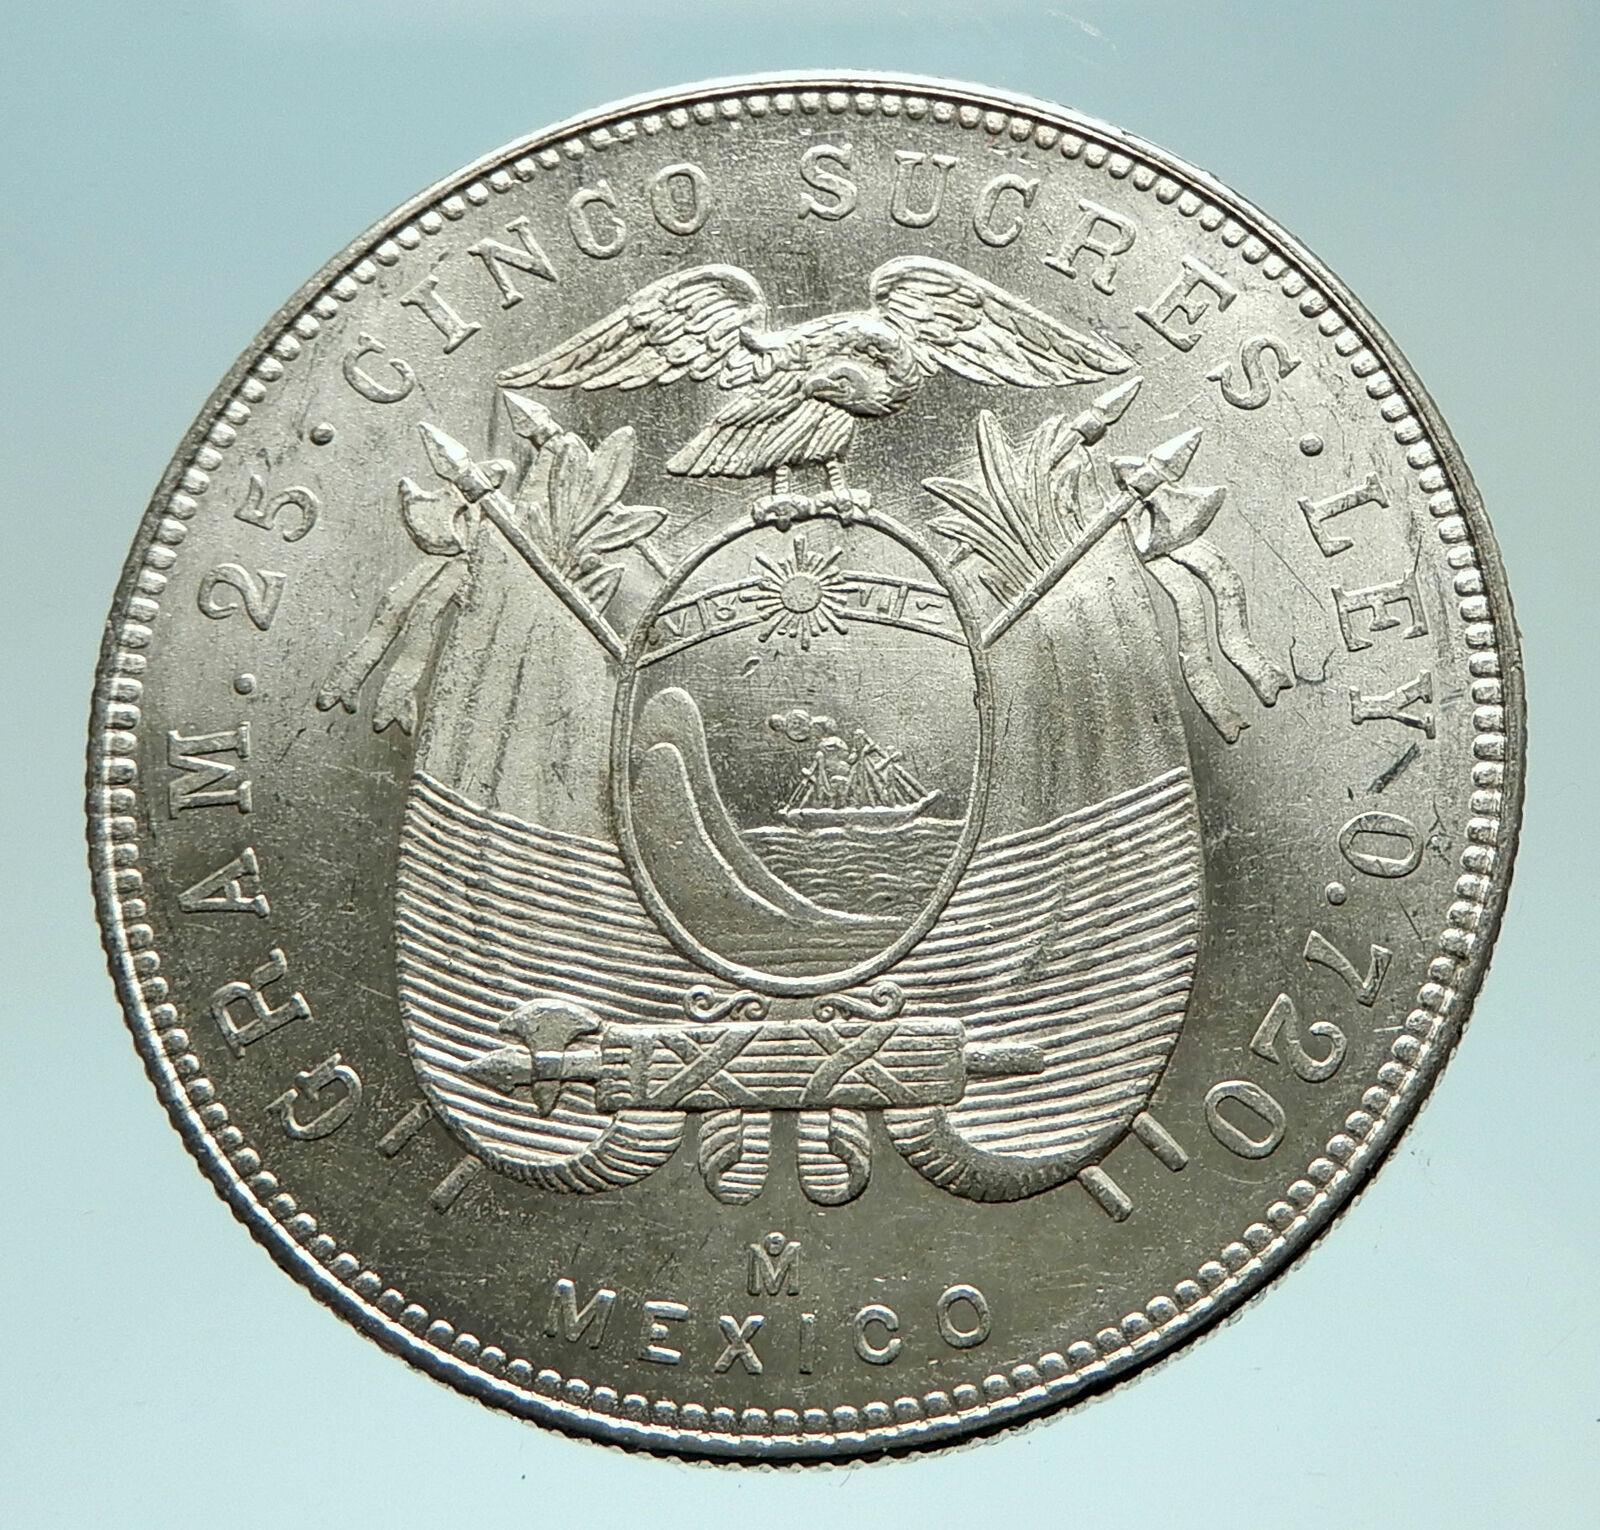 1944 ECUADOR Antonio Jose de Sucre y Alcala Antique Silver 5 Sucres Coin i76034